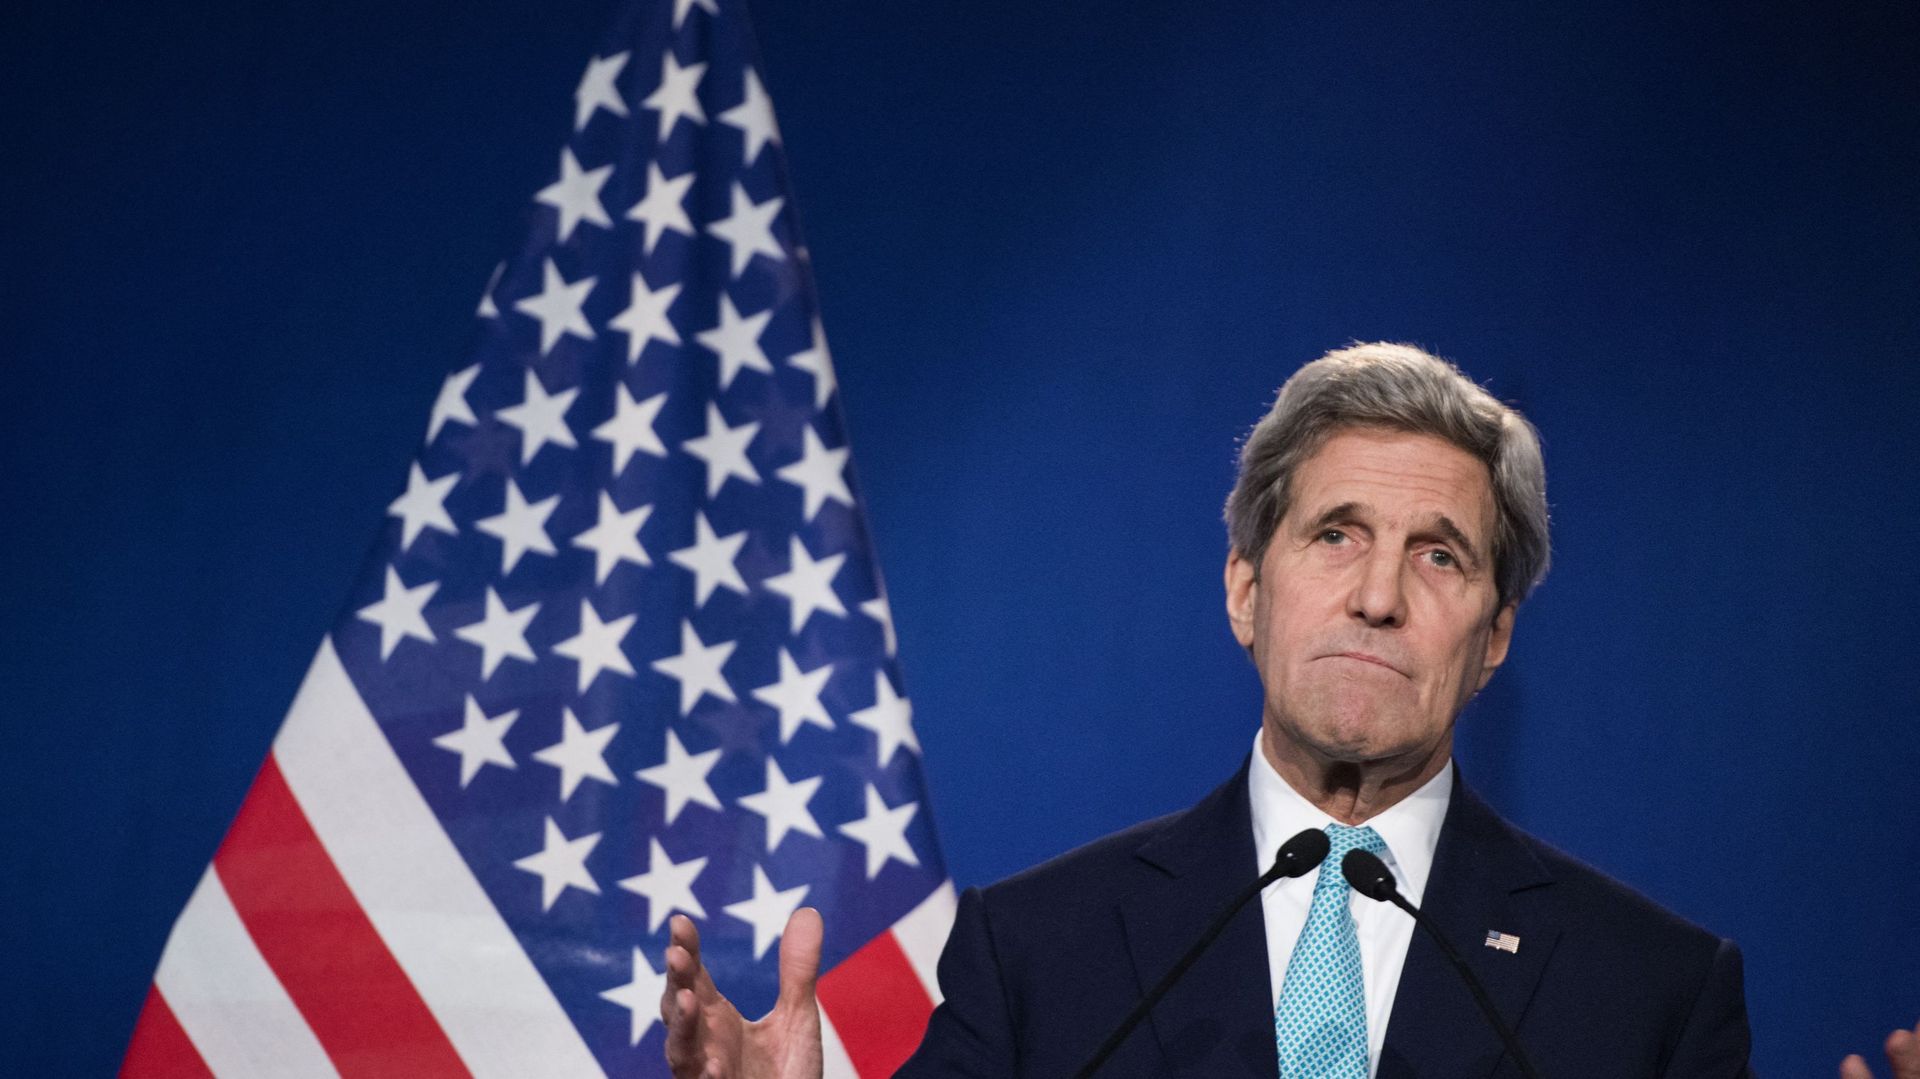 Le secrétaire d'État américain John Kerry s'adresse à la presse à l'École polytechnique fédérale de Lausanne après la fin des négociations sur le programme nucléaire iranien, le 2 avril 2015 à Lausanne.